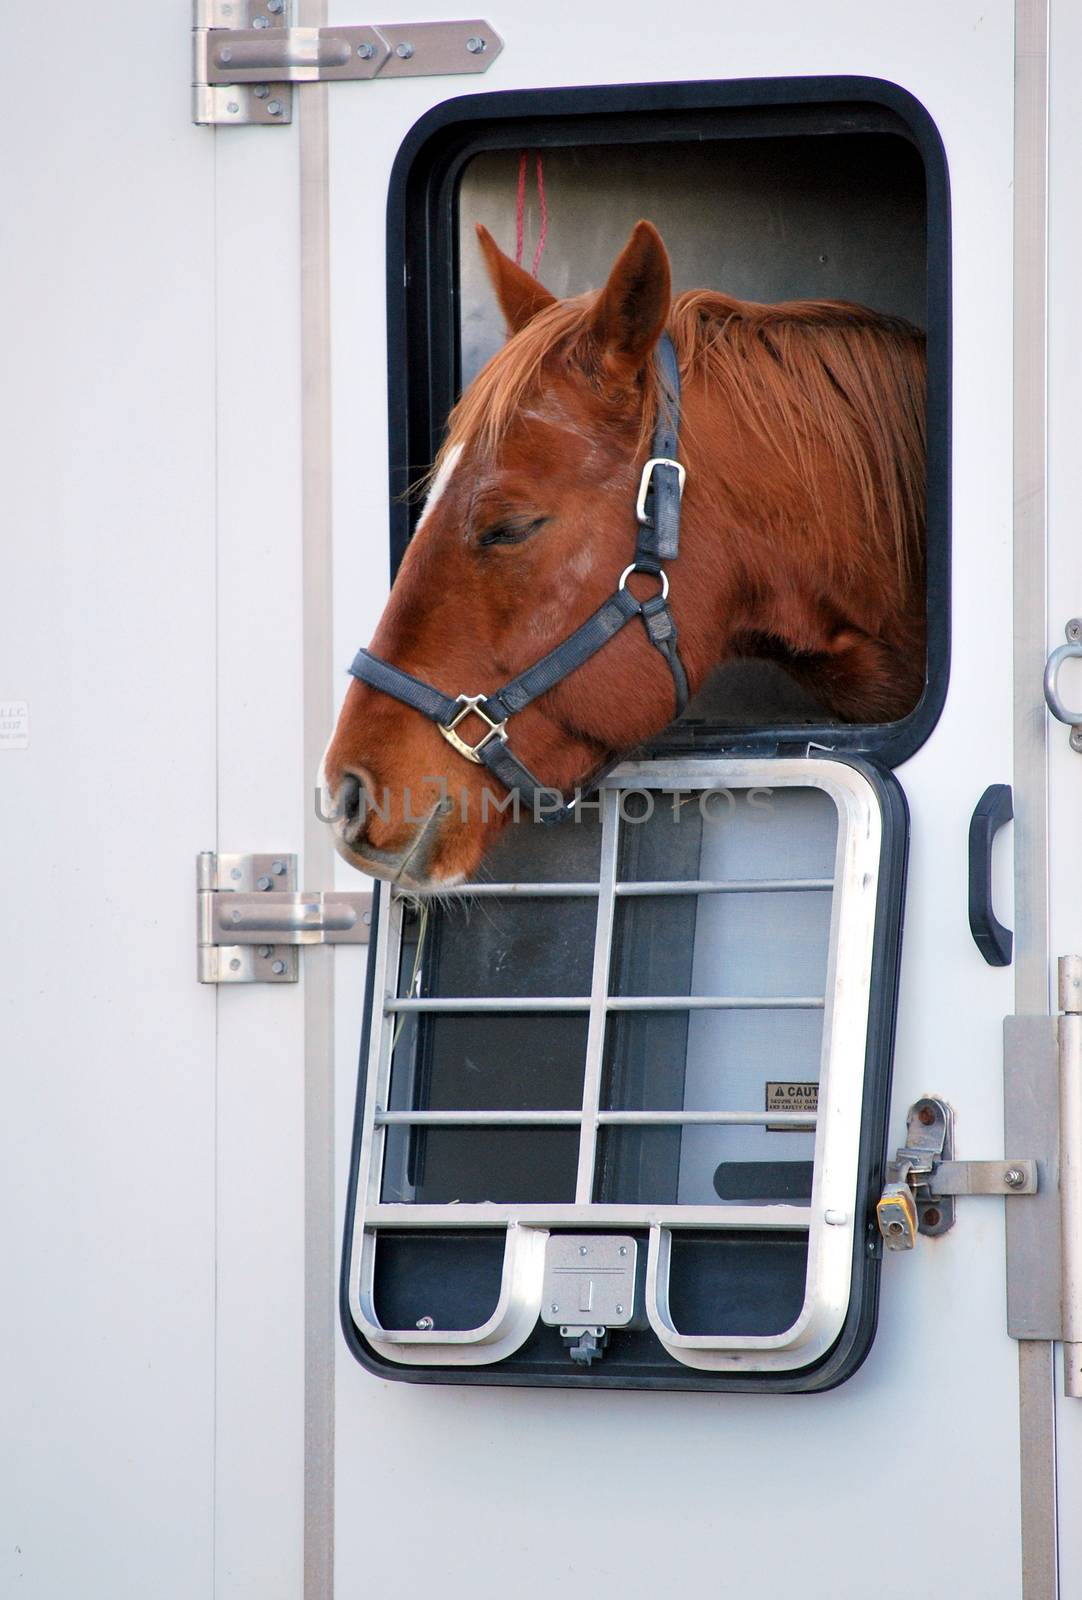 Horse in trailer. by oscarcwilliams